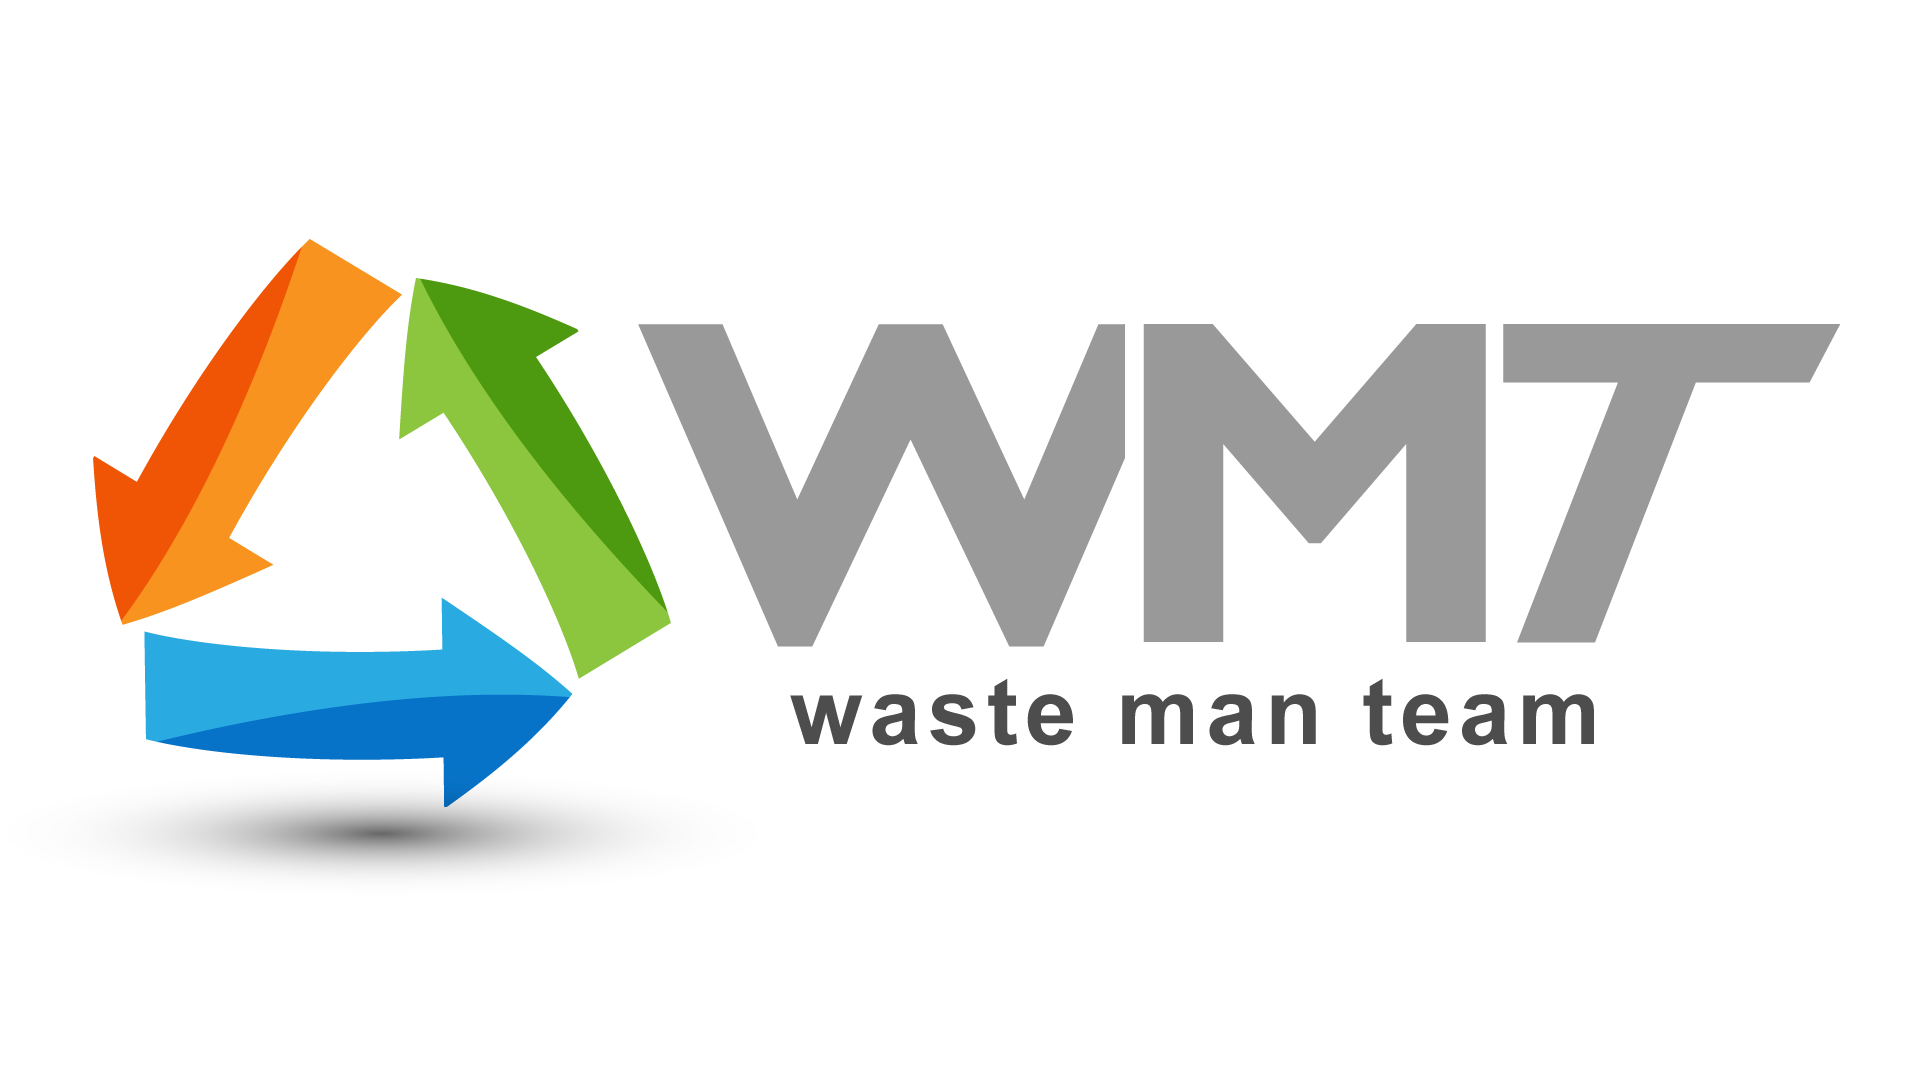 waste man team logo